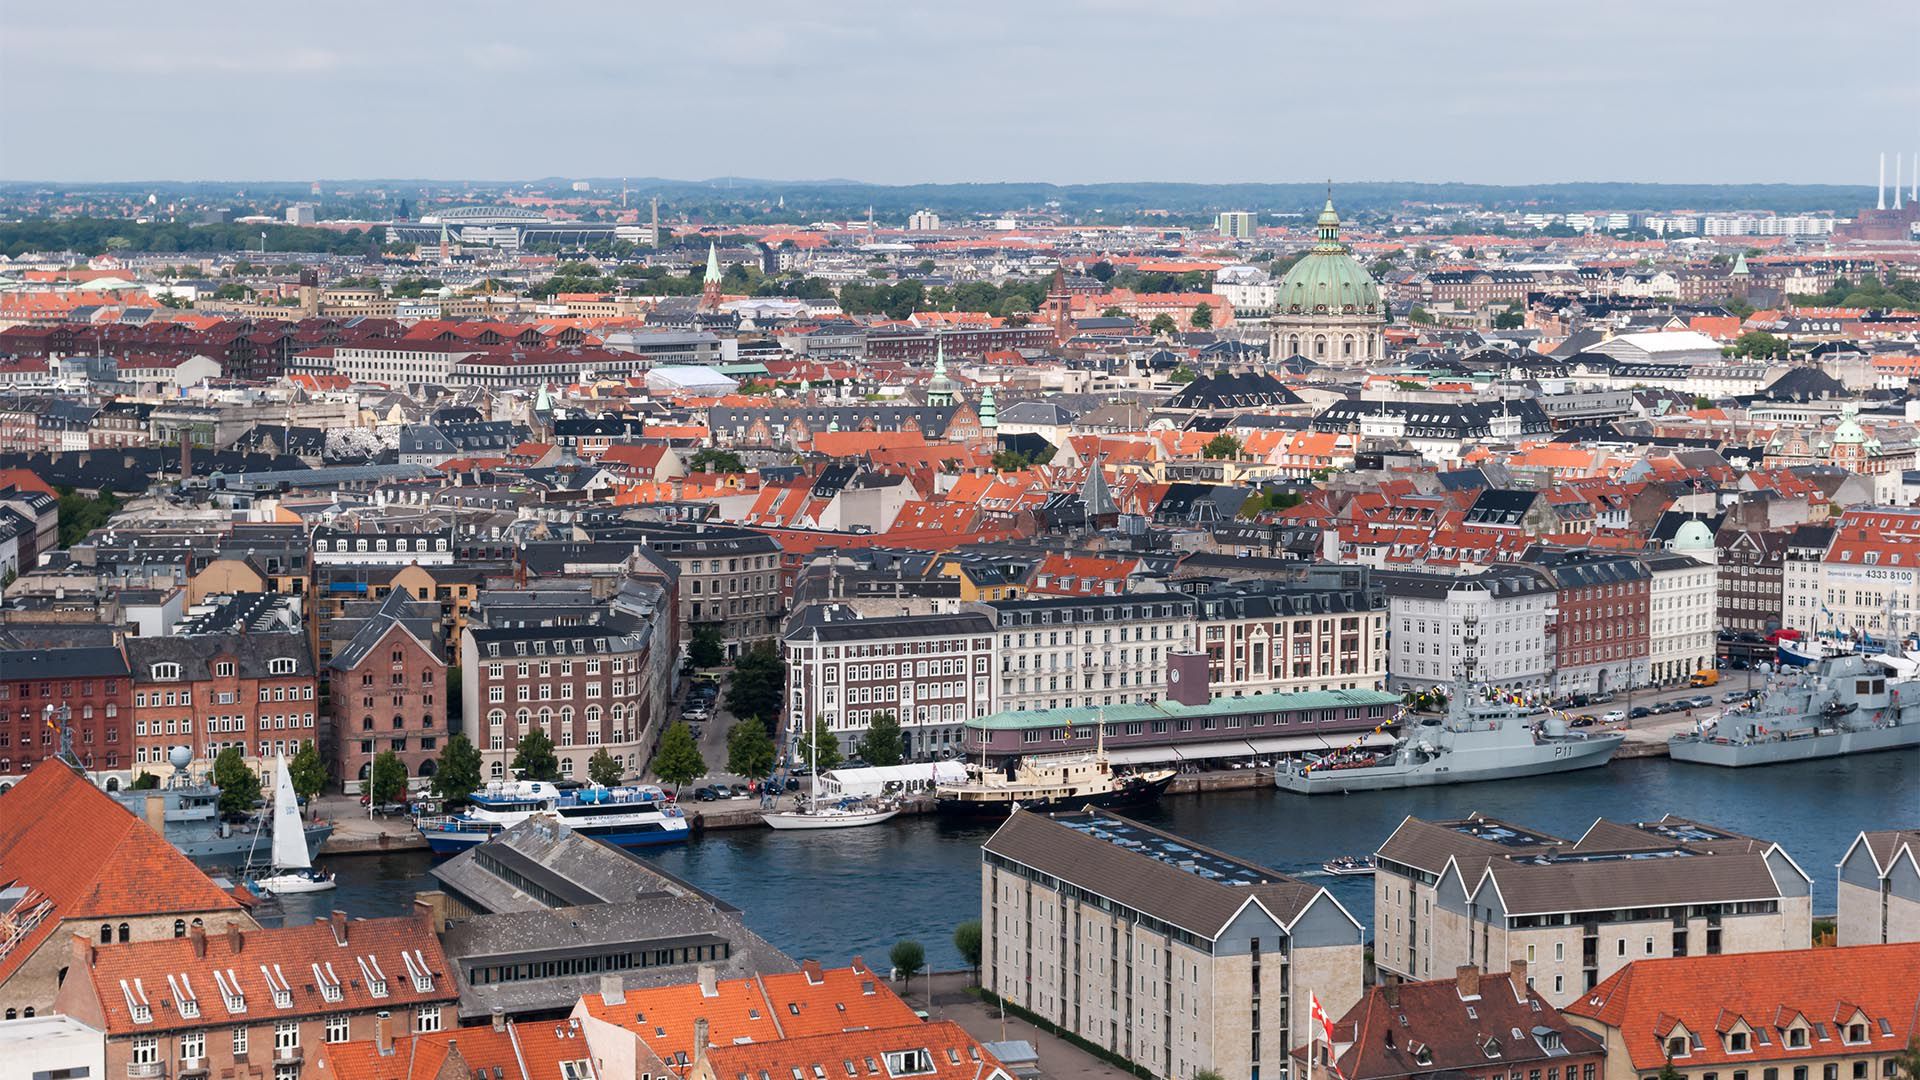 Copenhague es una ciudad relativamente segura y es más segura en muchos niveles que otras ciudades europeas o americanas. Sin embargo, sigue siendo una urbe, por lo que hay que tomar precauciones para la seguridad